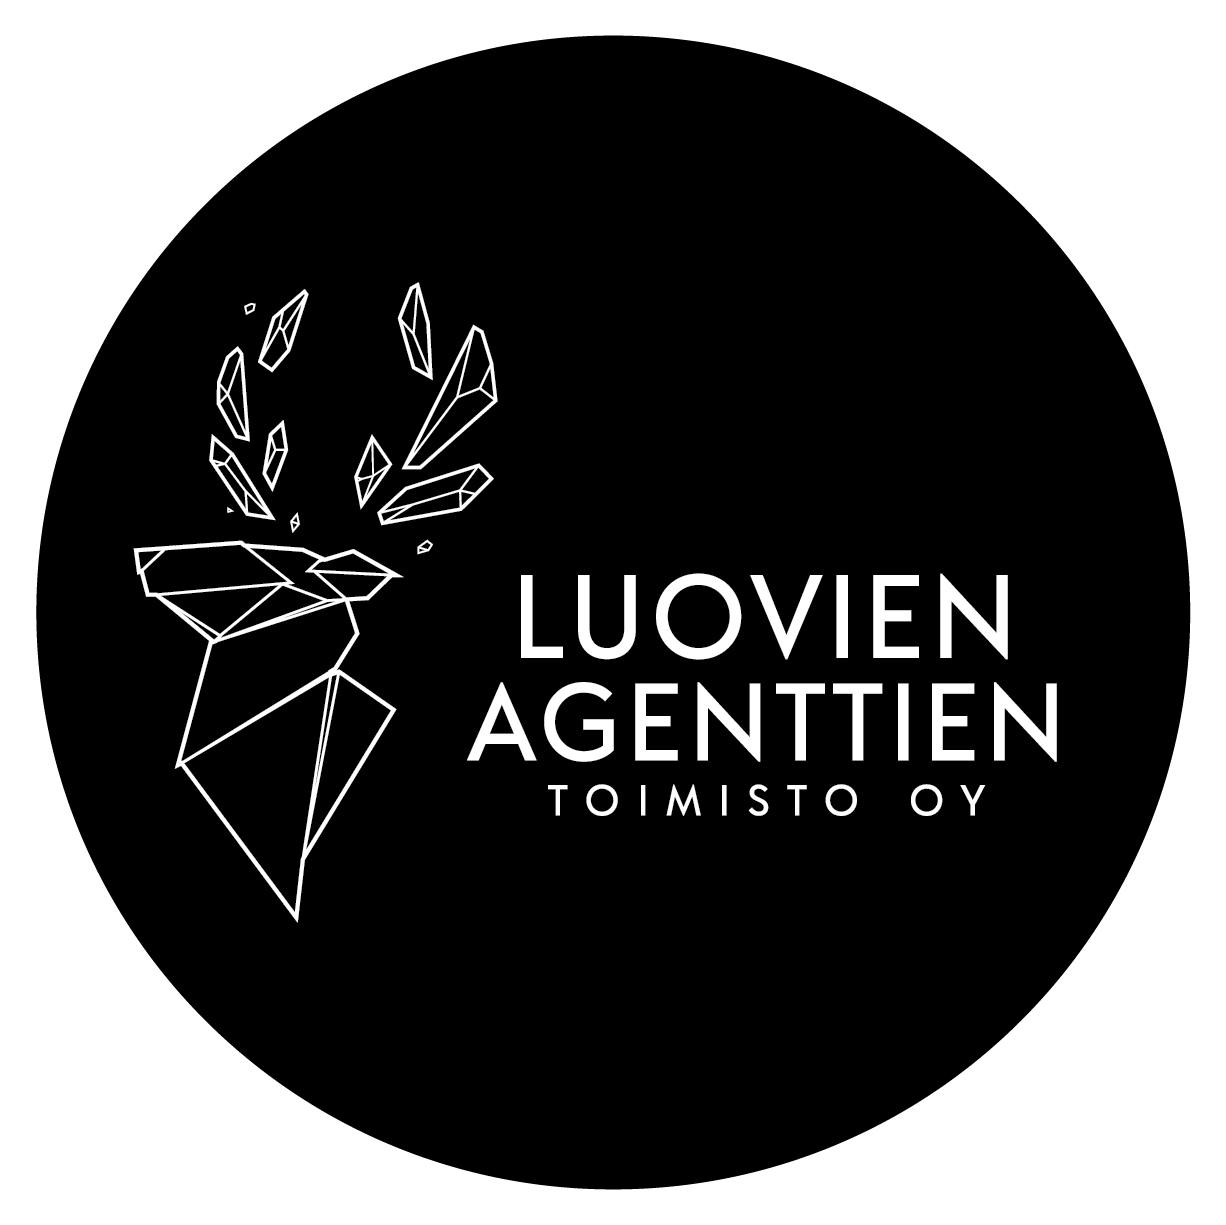 Markkinointipalveluja tarjoavan Luovien Agenttien Toimisto Oy:n logo